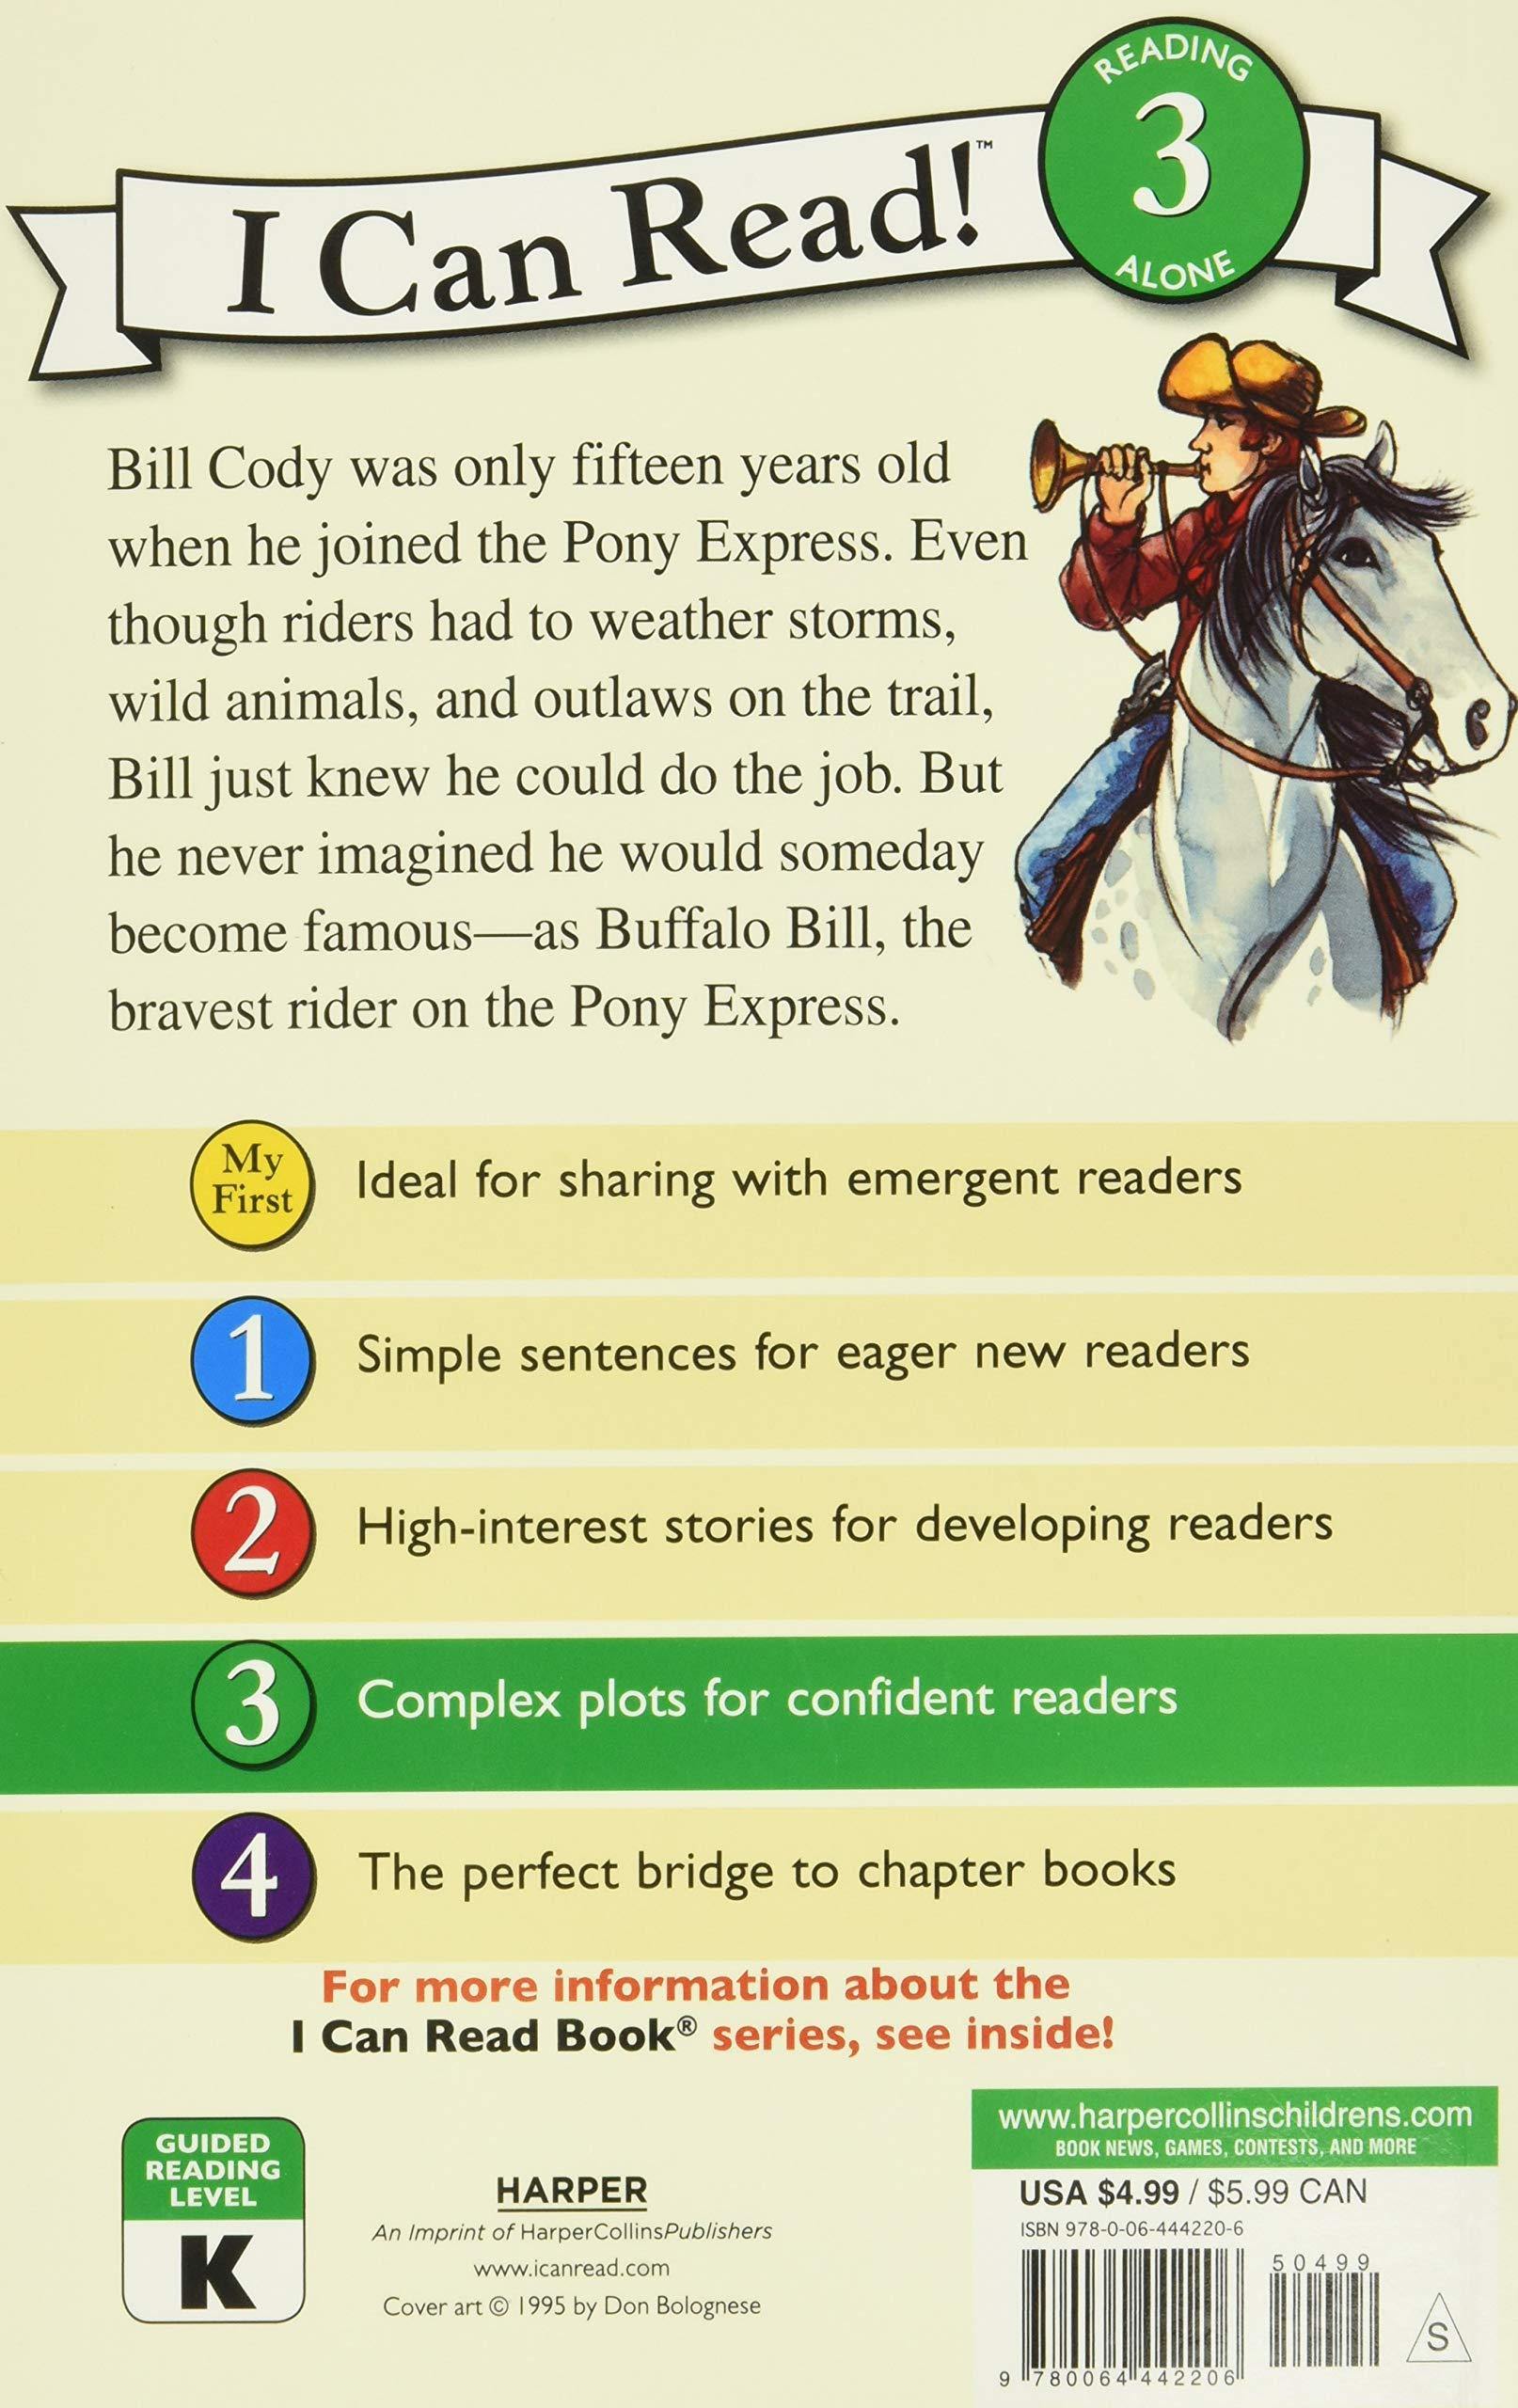 buffalo-bill-and-the-pony-express